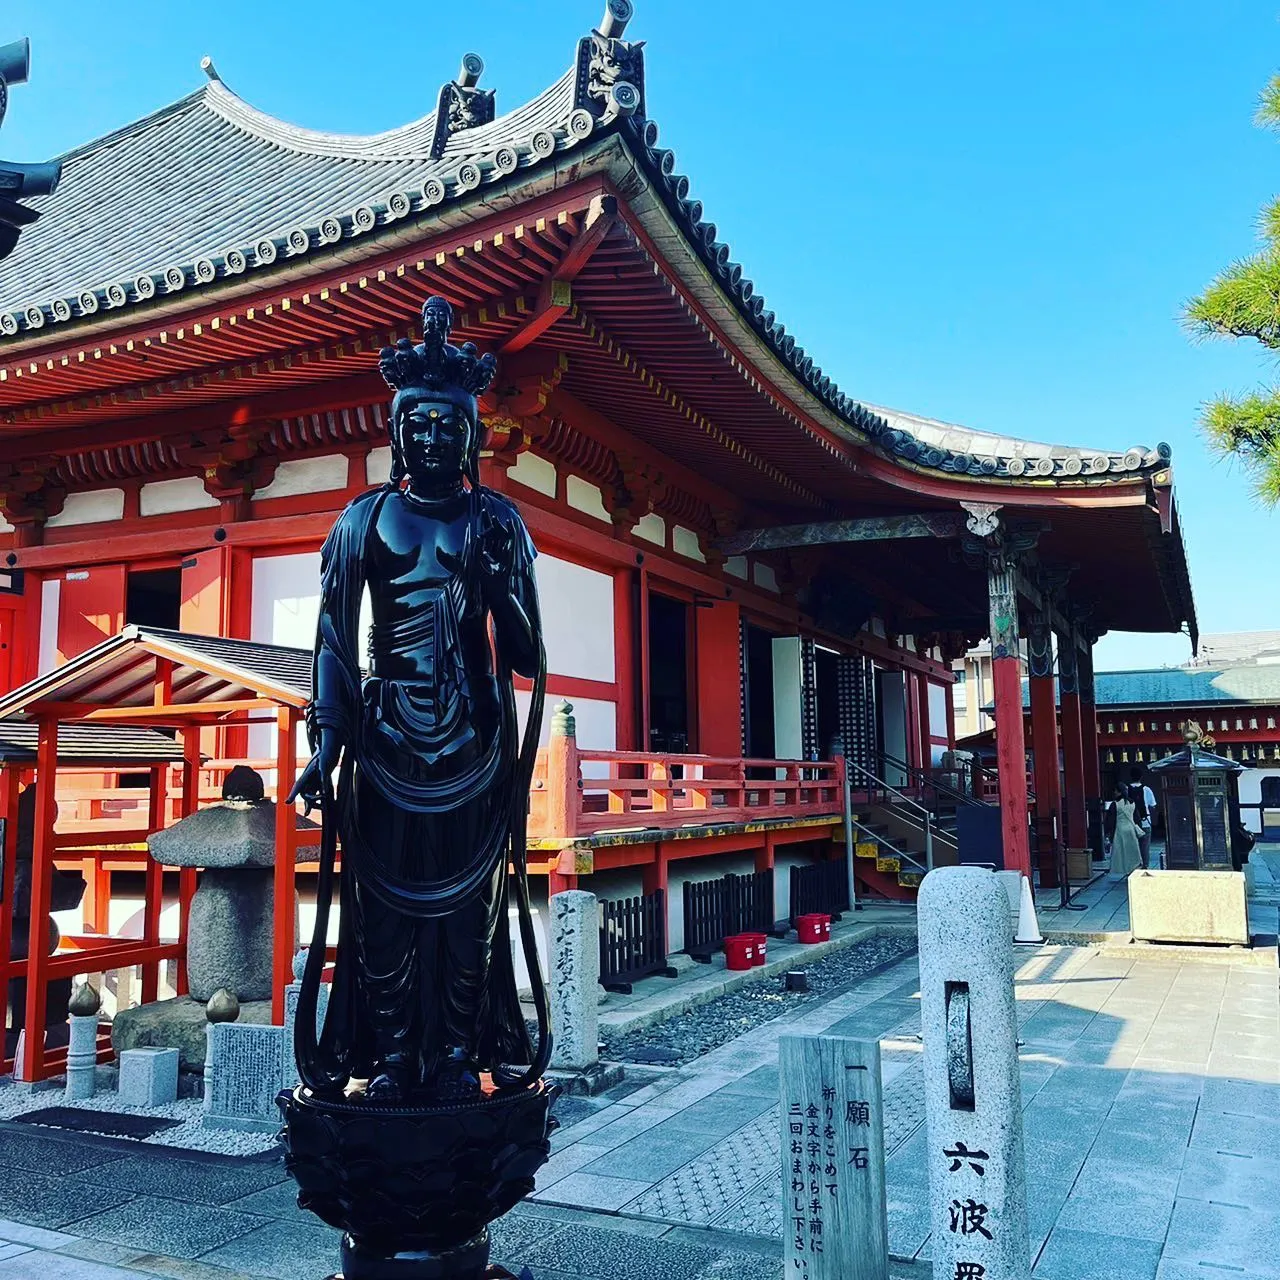 Rokuhara-mitsu-ji temple